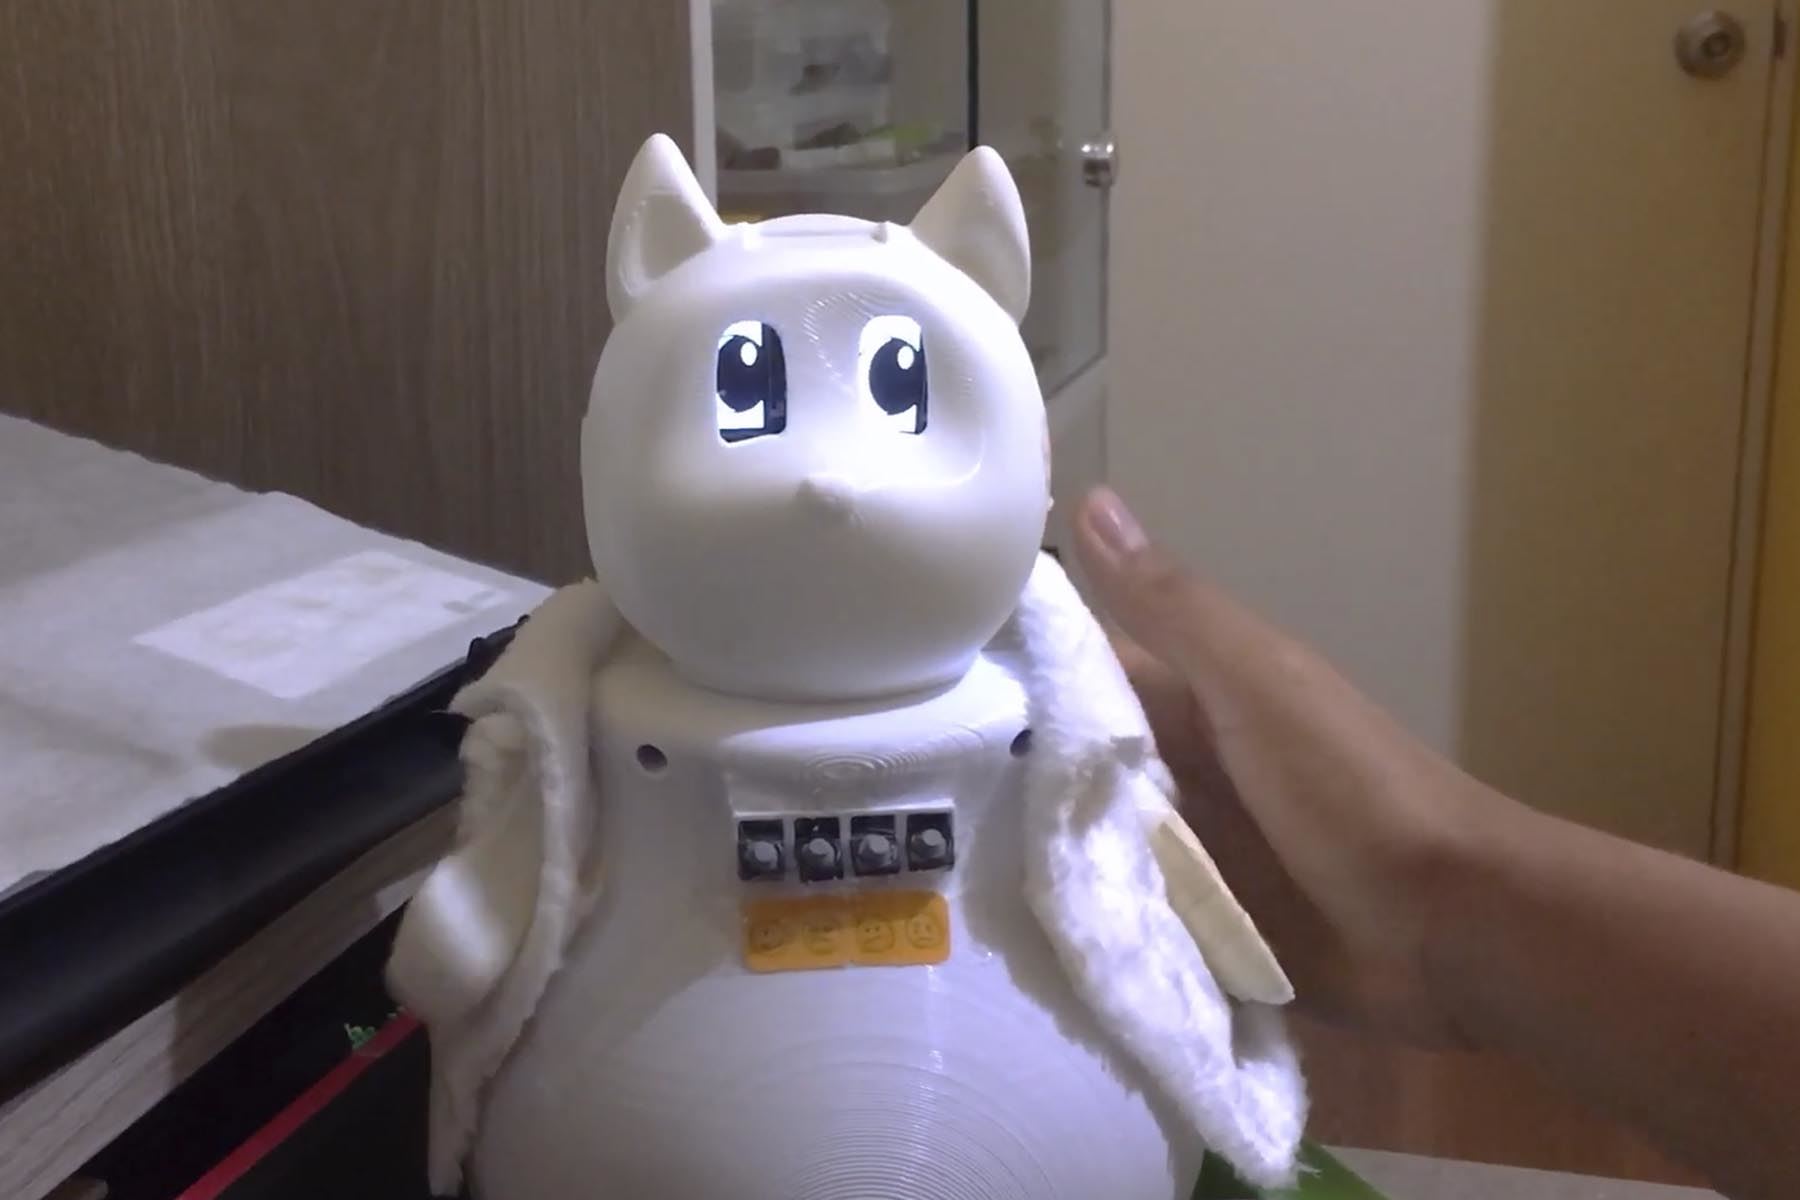 El robot social Amigus fue seleccionado para competir en las ediciones virtuales de la International Conference on Social Robotics 2021 y en la International Conference on Human-Robot Interaction 2022.